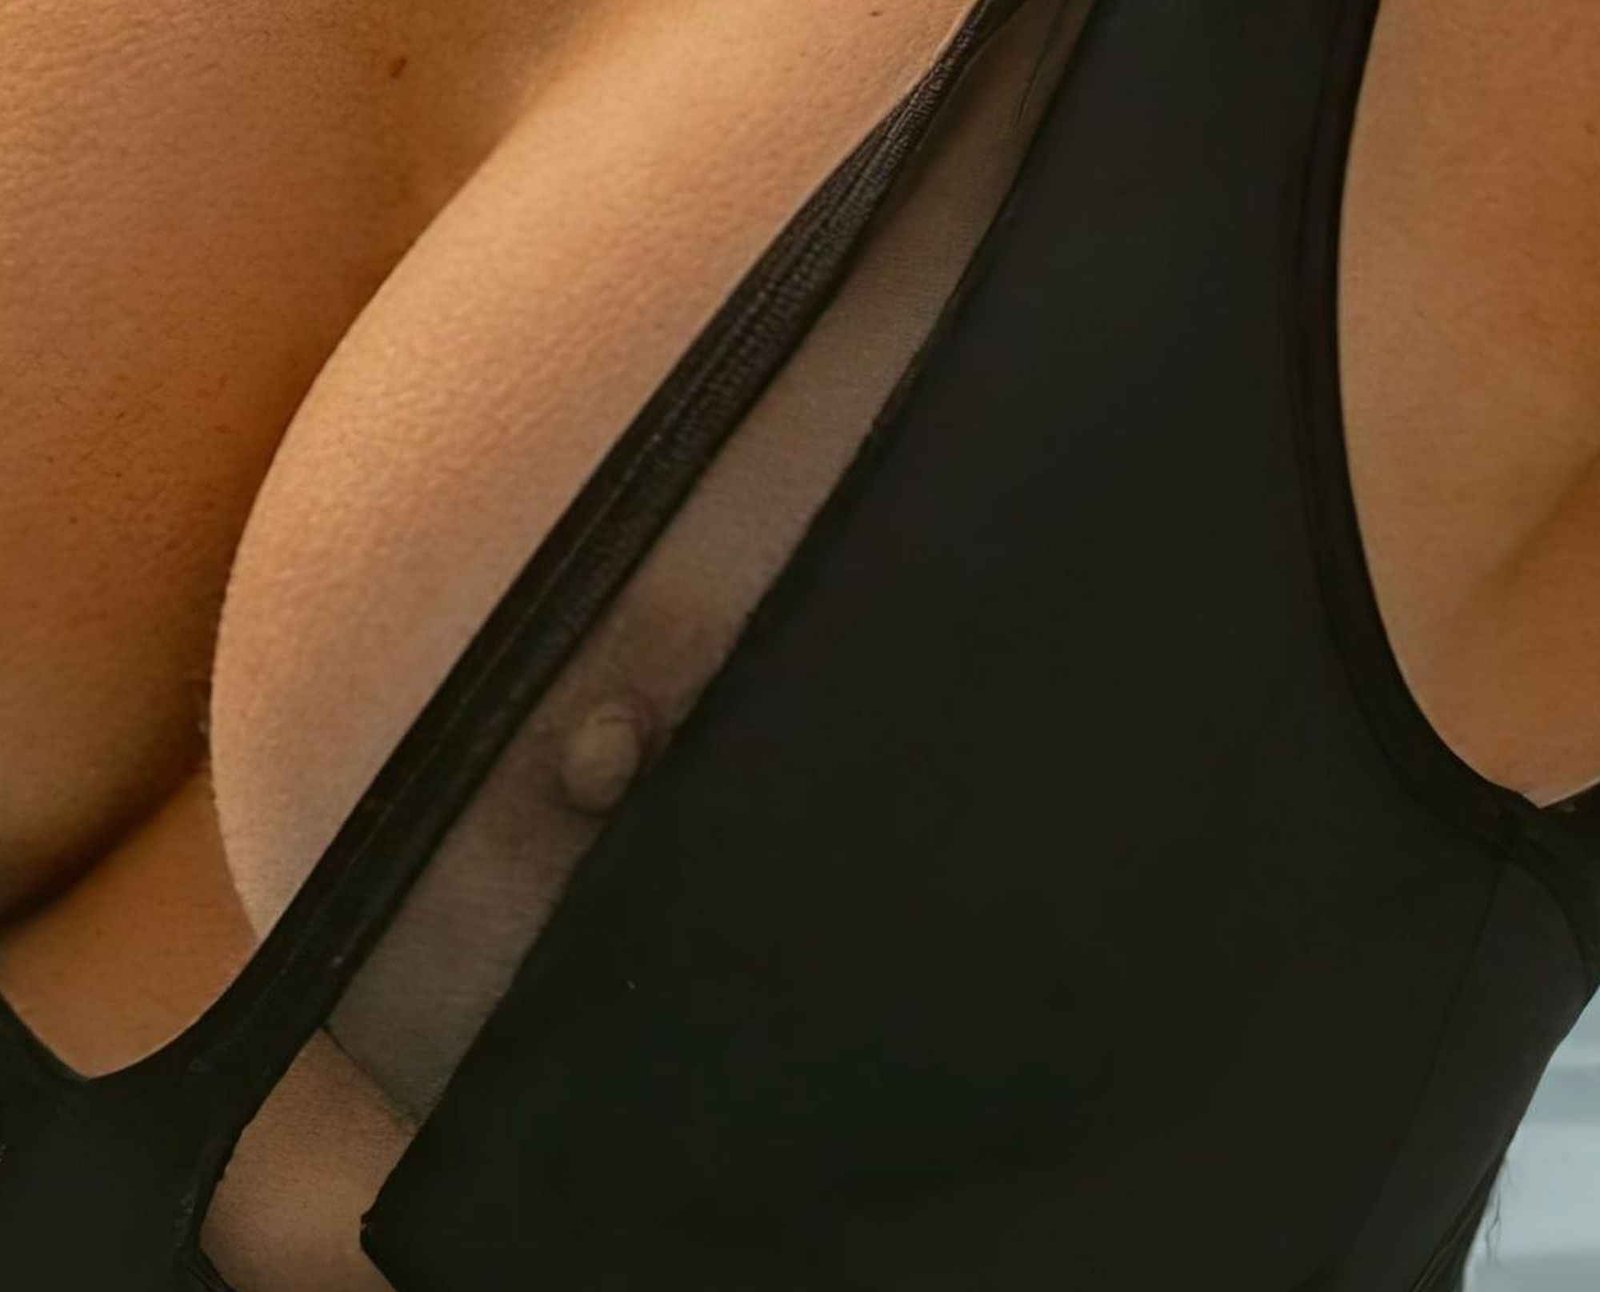 Kara Del Toro dans un maillot de bain qui laisse voir ses seins nus